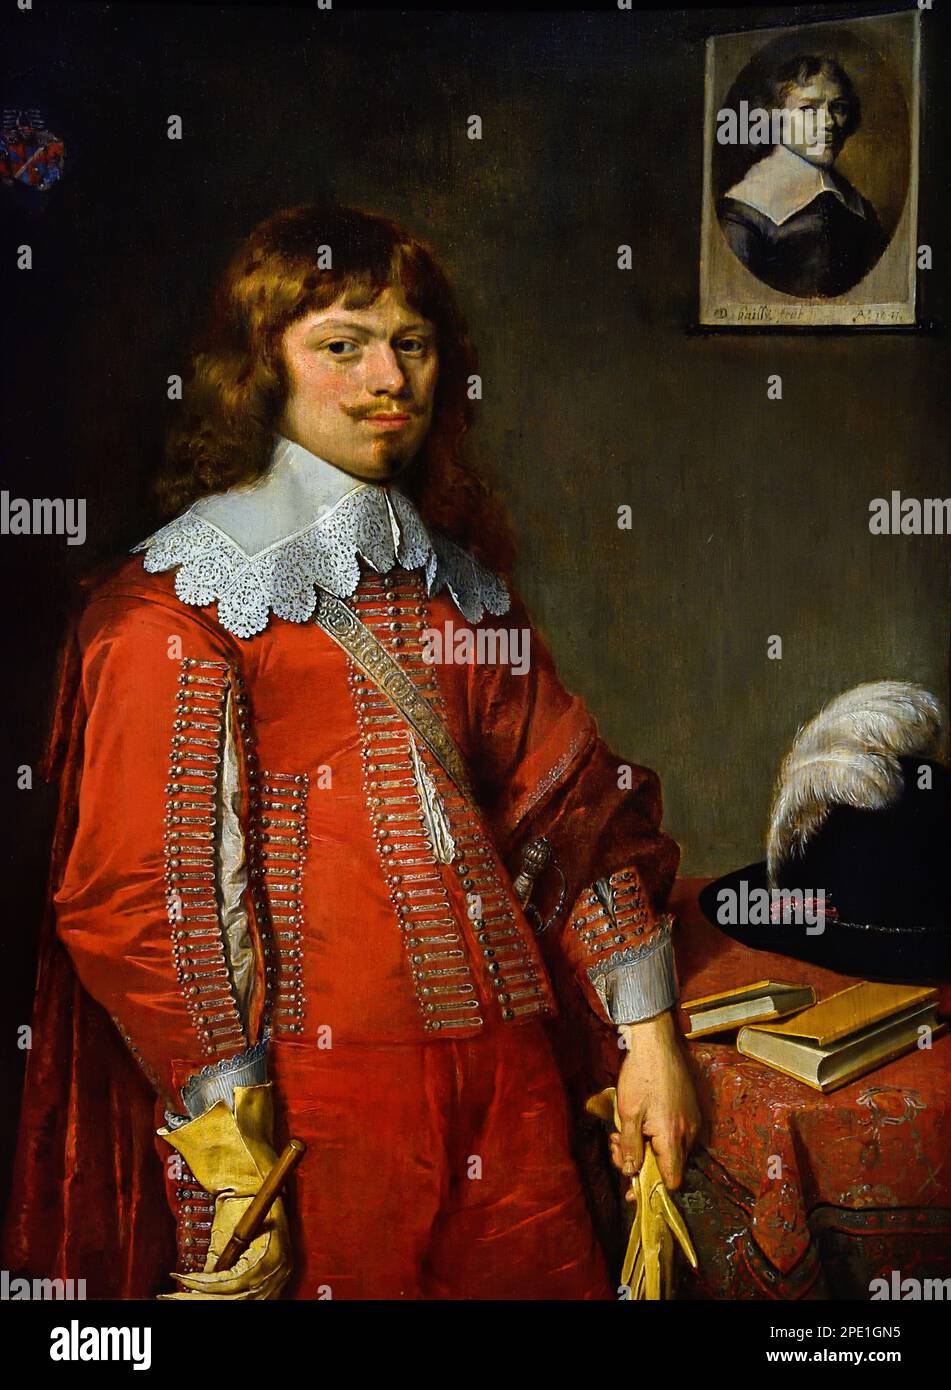 Portrait Christian Rosenkrantz 1641 de David Bailly (1584–1657) est un peintre hollandais de l'âge d'or. Musée des beaux-arts, Leiden, Lakenhal, pays-Bas, Hollande, Néerlandais. Banque D'Images